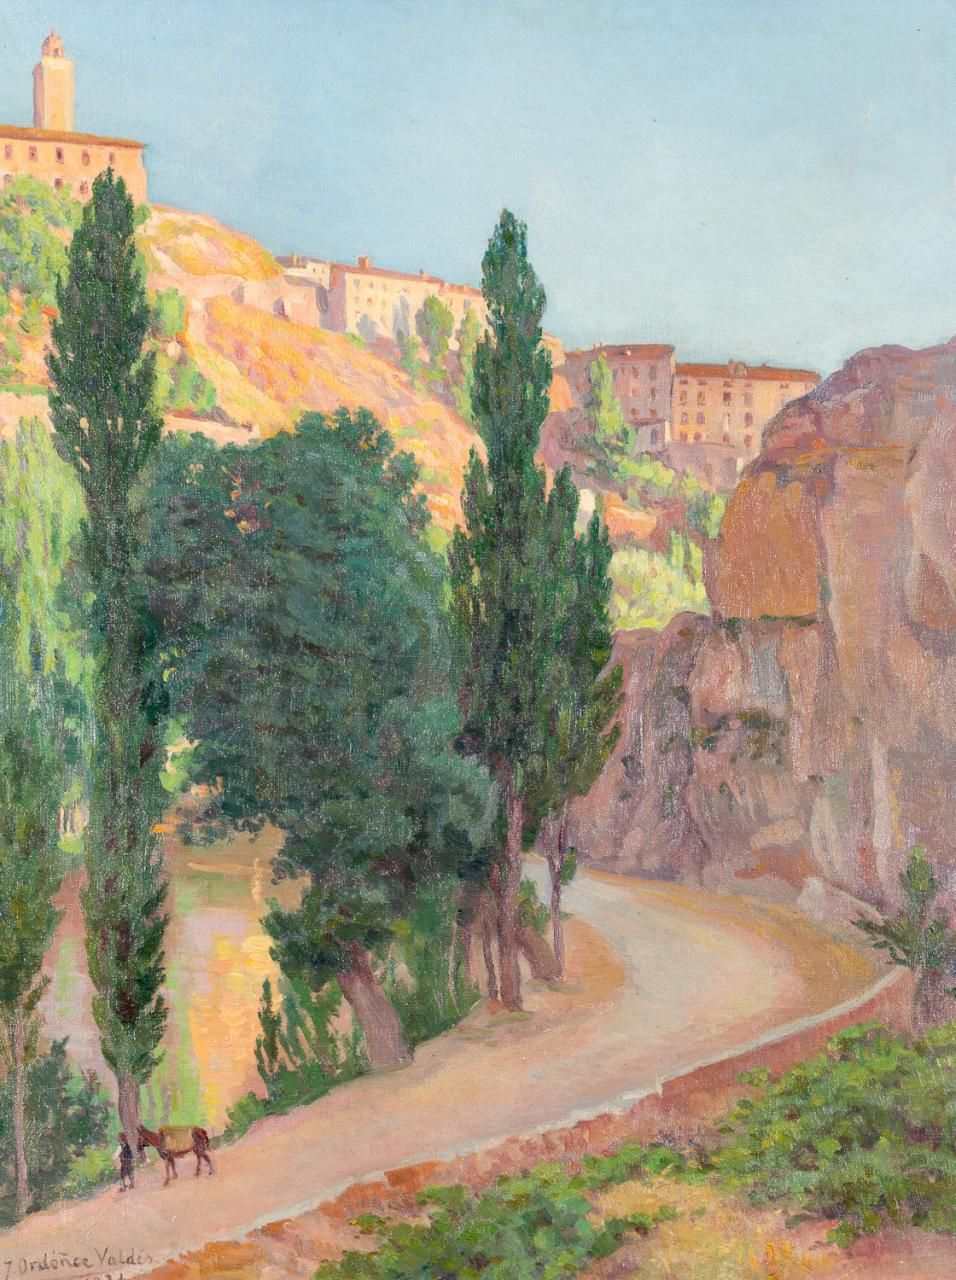 JOSÉ ORDÓÑEZ VALDÉS (Huelva, 1873 - 1953) Paisaje
Óleo sobre lienzo
72 x 56 cm
F&hellip;